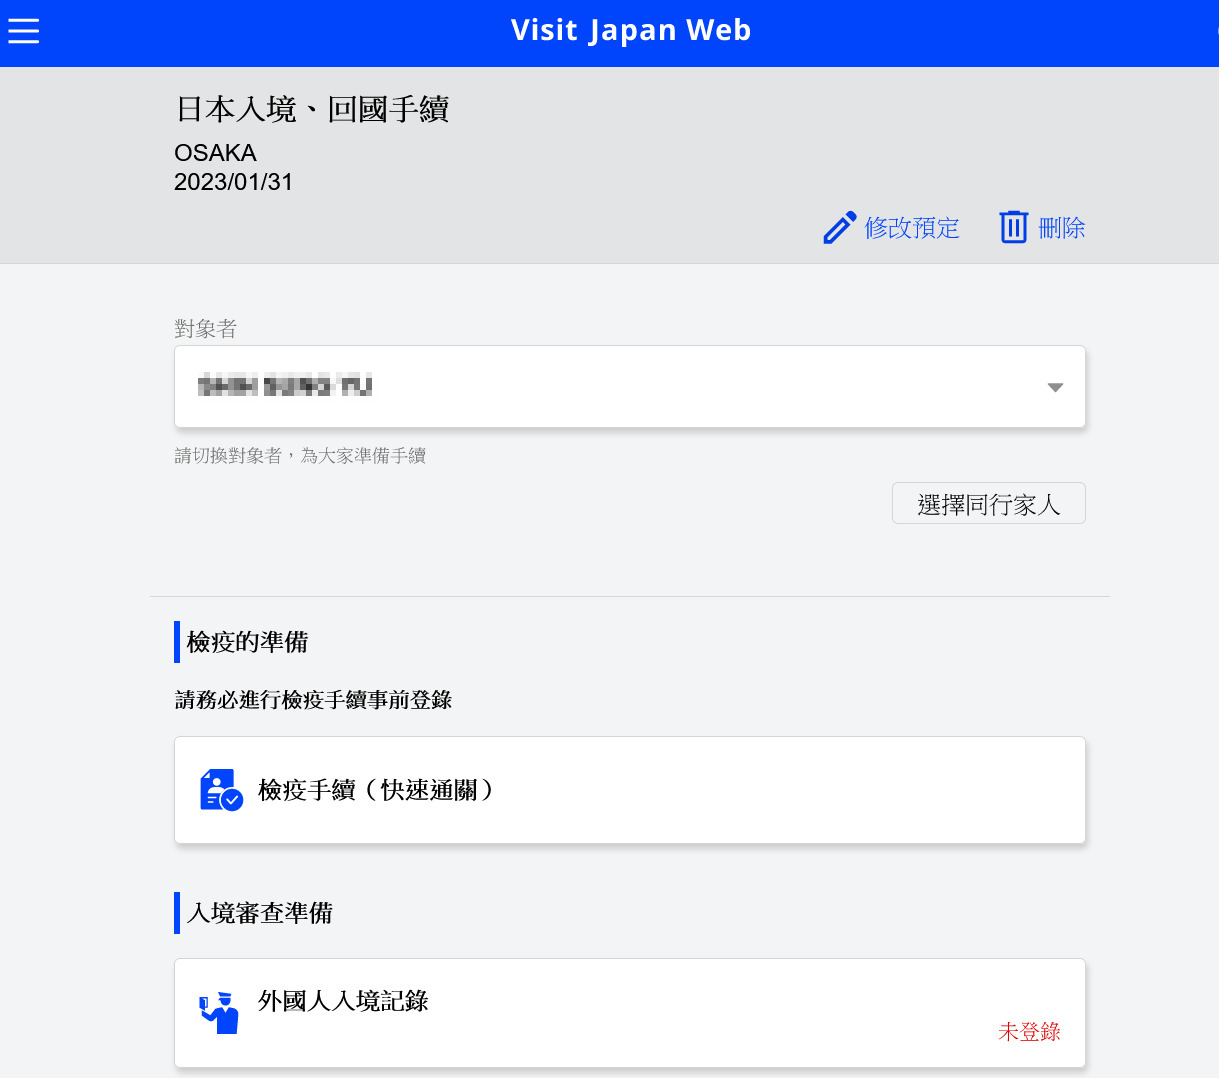 2023日本入境必看新規定 「Visit Japan Web教學」1分鐘學會 同行家人 (2月入境實況)